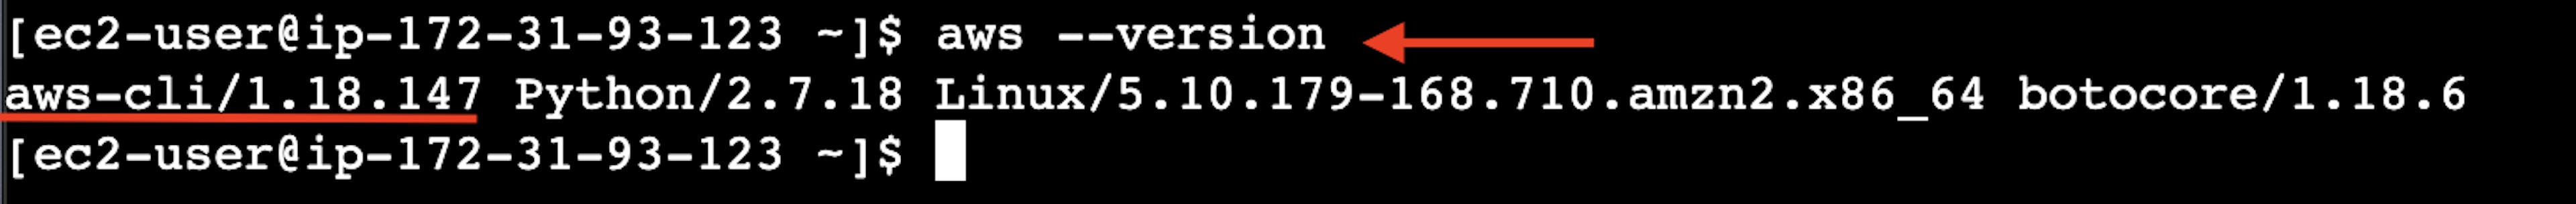 A captura de tela do terminal on-line da instância do servidor virtual AWS EC2 com o resultado do comando da versão aws